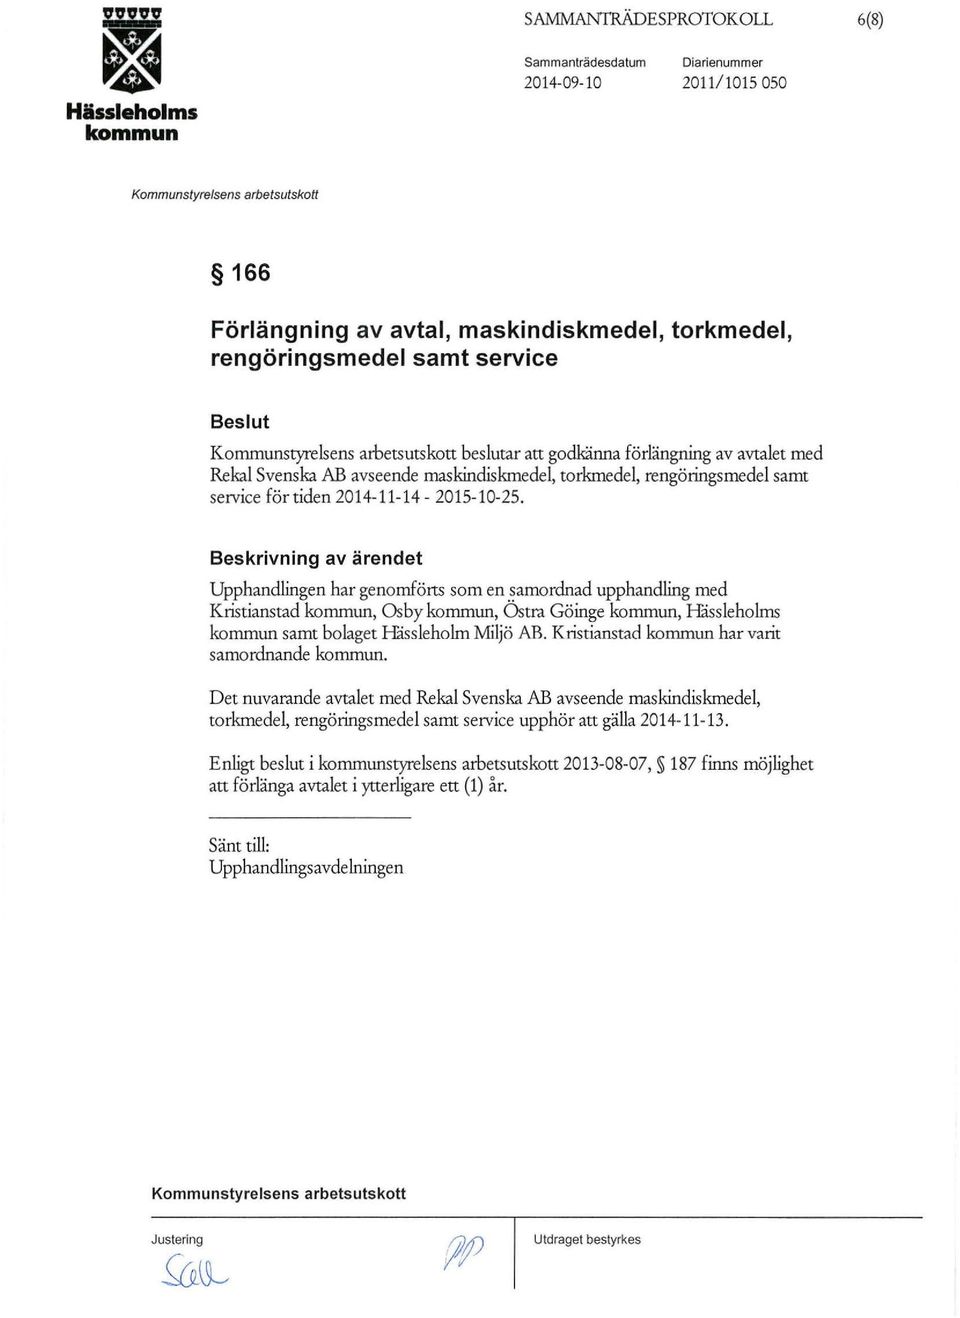 Beskrivning av ärendet Upphandlingen har genomförts som en samordnad upphandling med Kristianstad, Os by, Östra Göinge, Håssieholms samt bolaget Håssieholm Miljö AB.